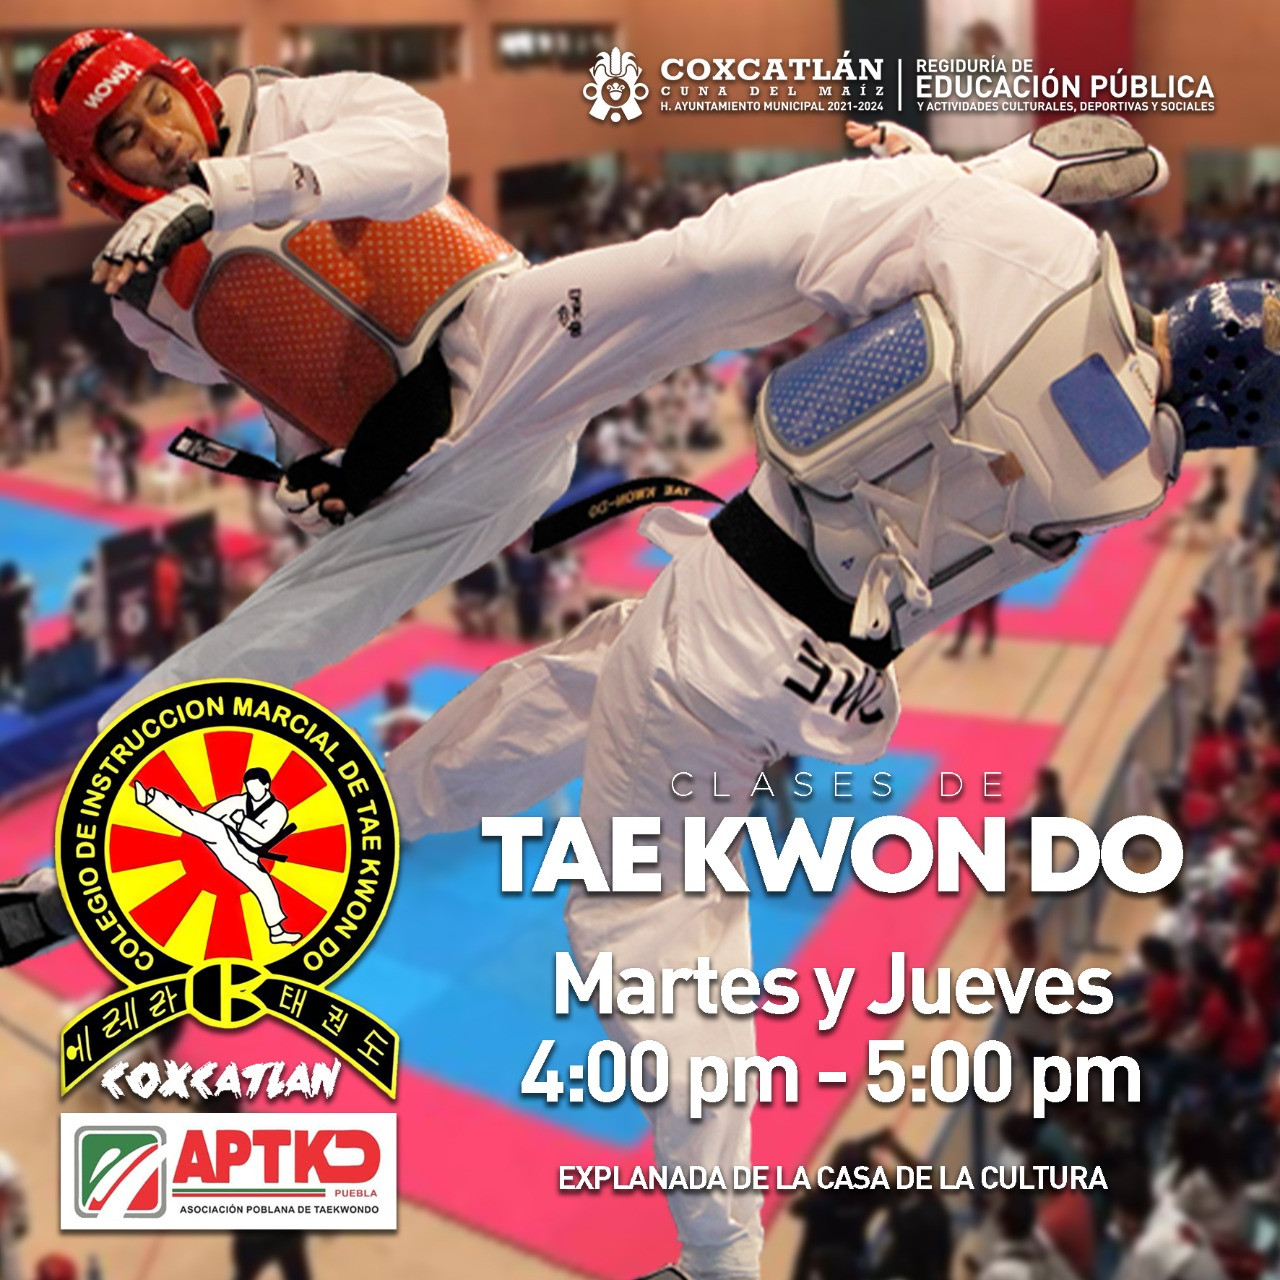 ¿Te interesa el #Taekwondo?